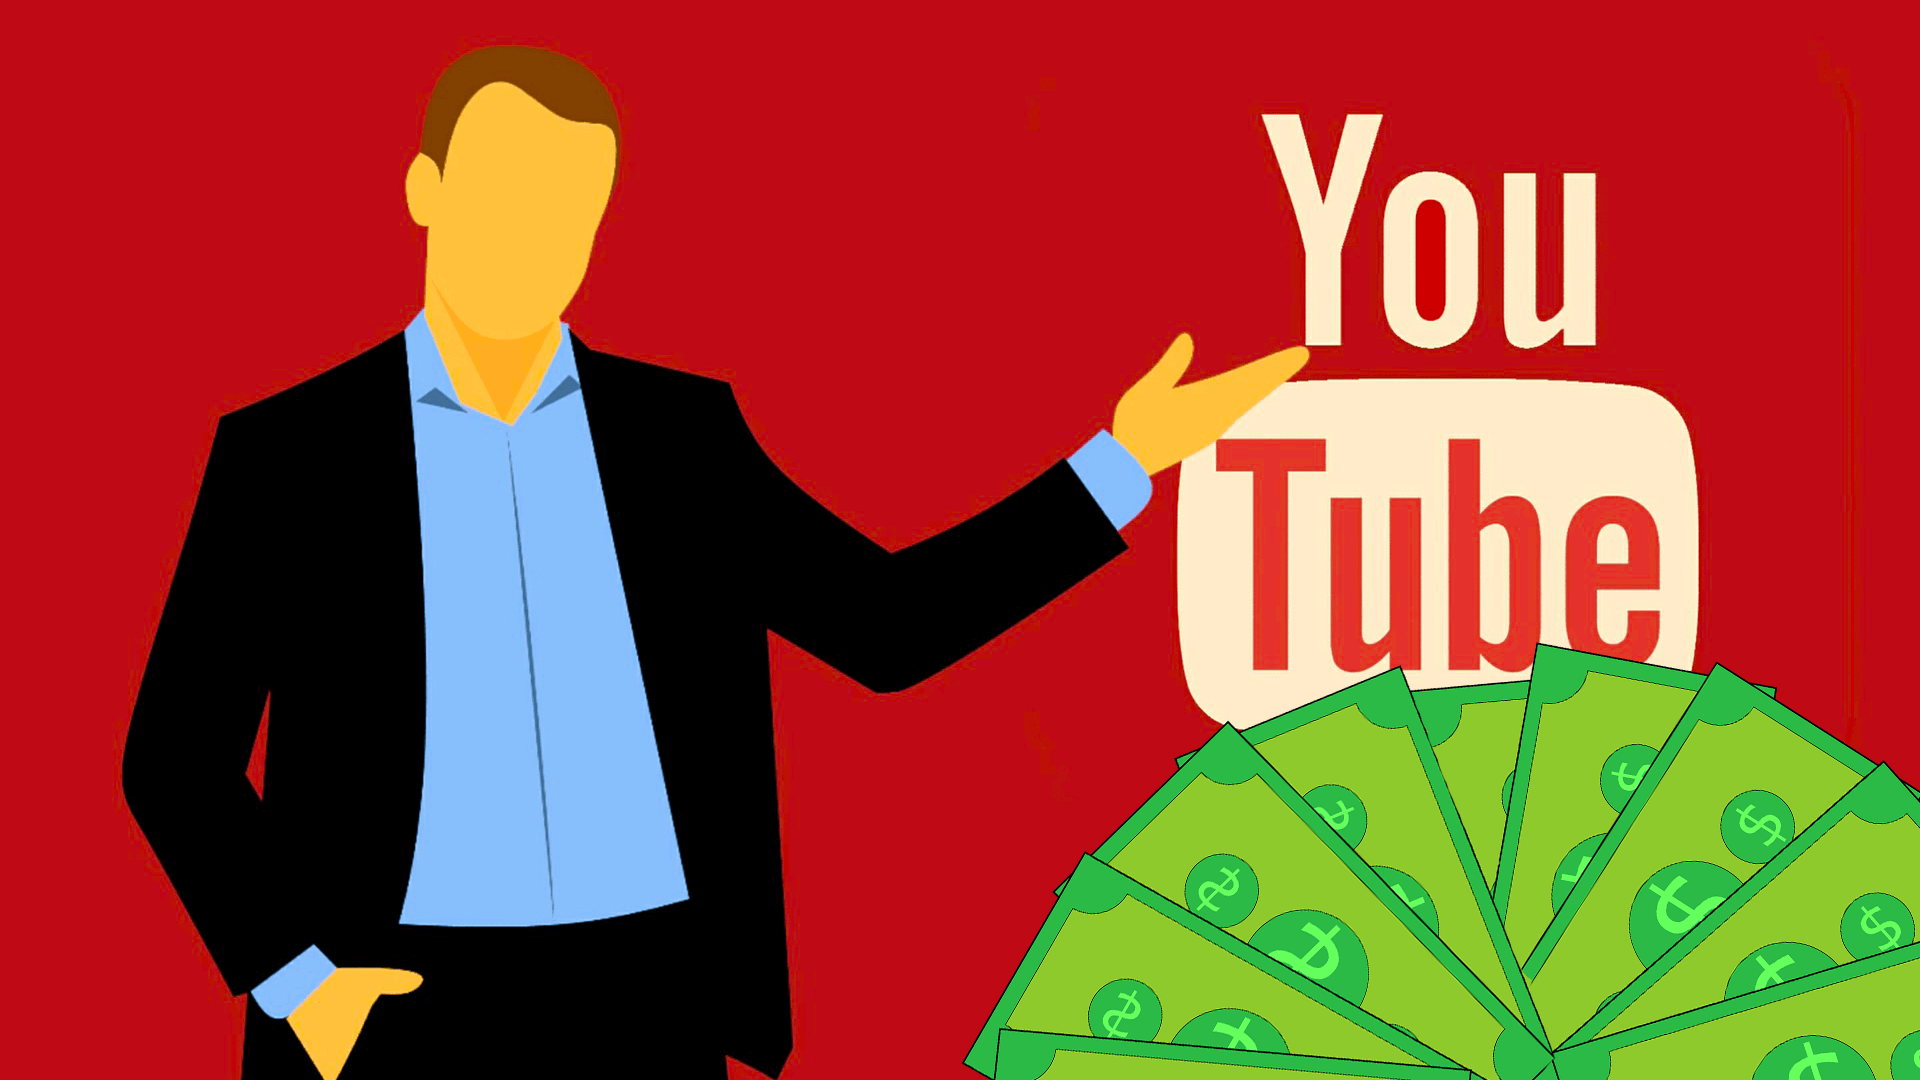 YouTube pénzkeresés: hogyan működik és mennyit lehet keresni?